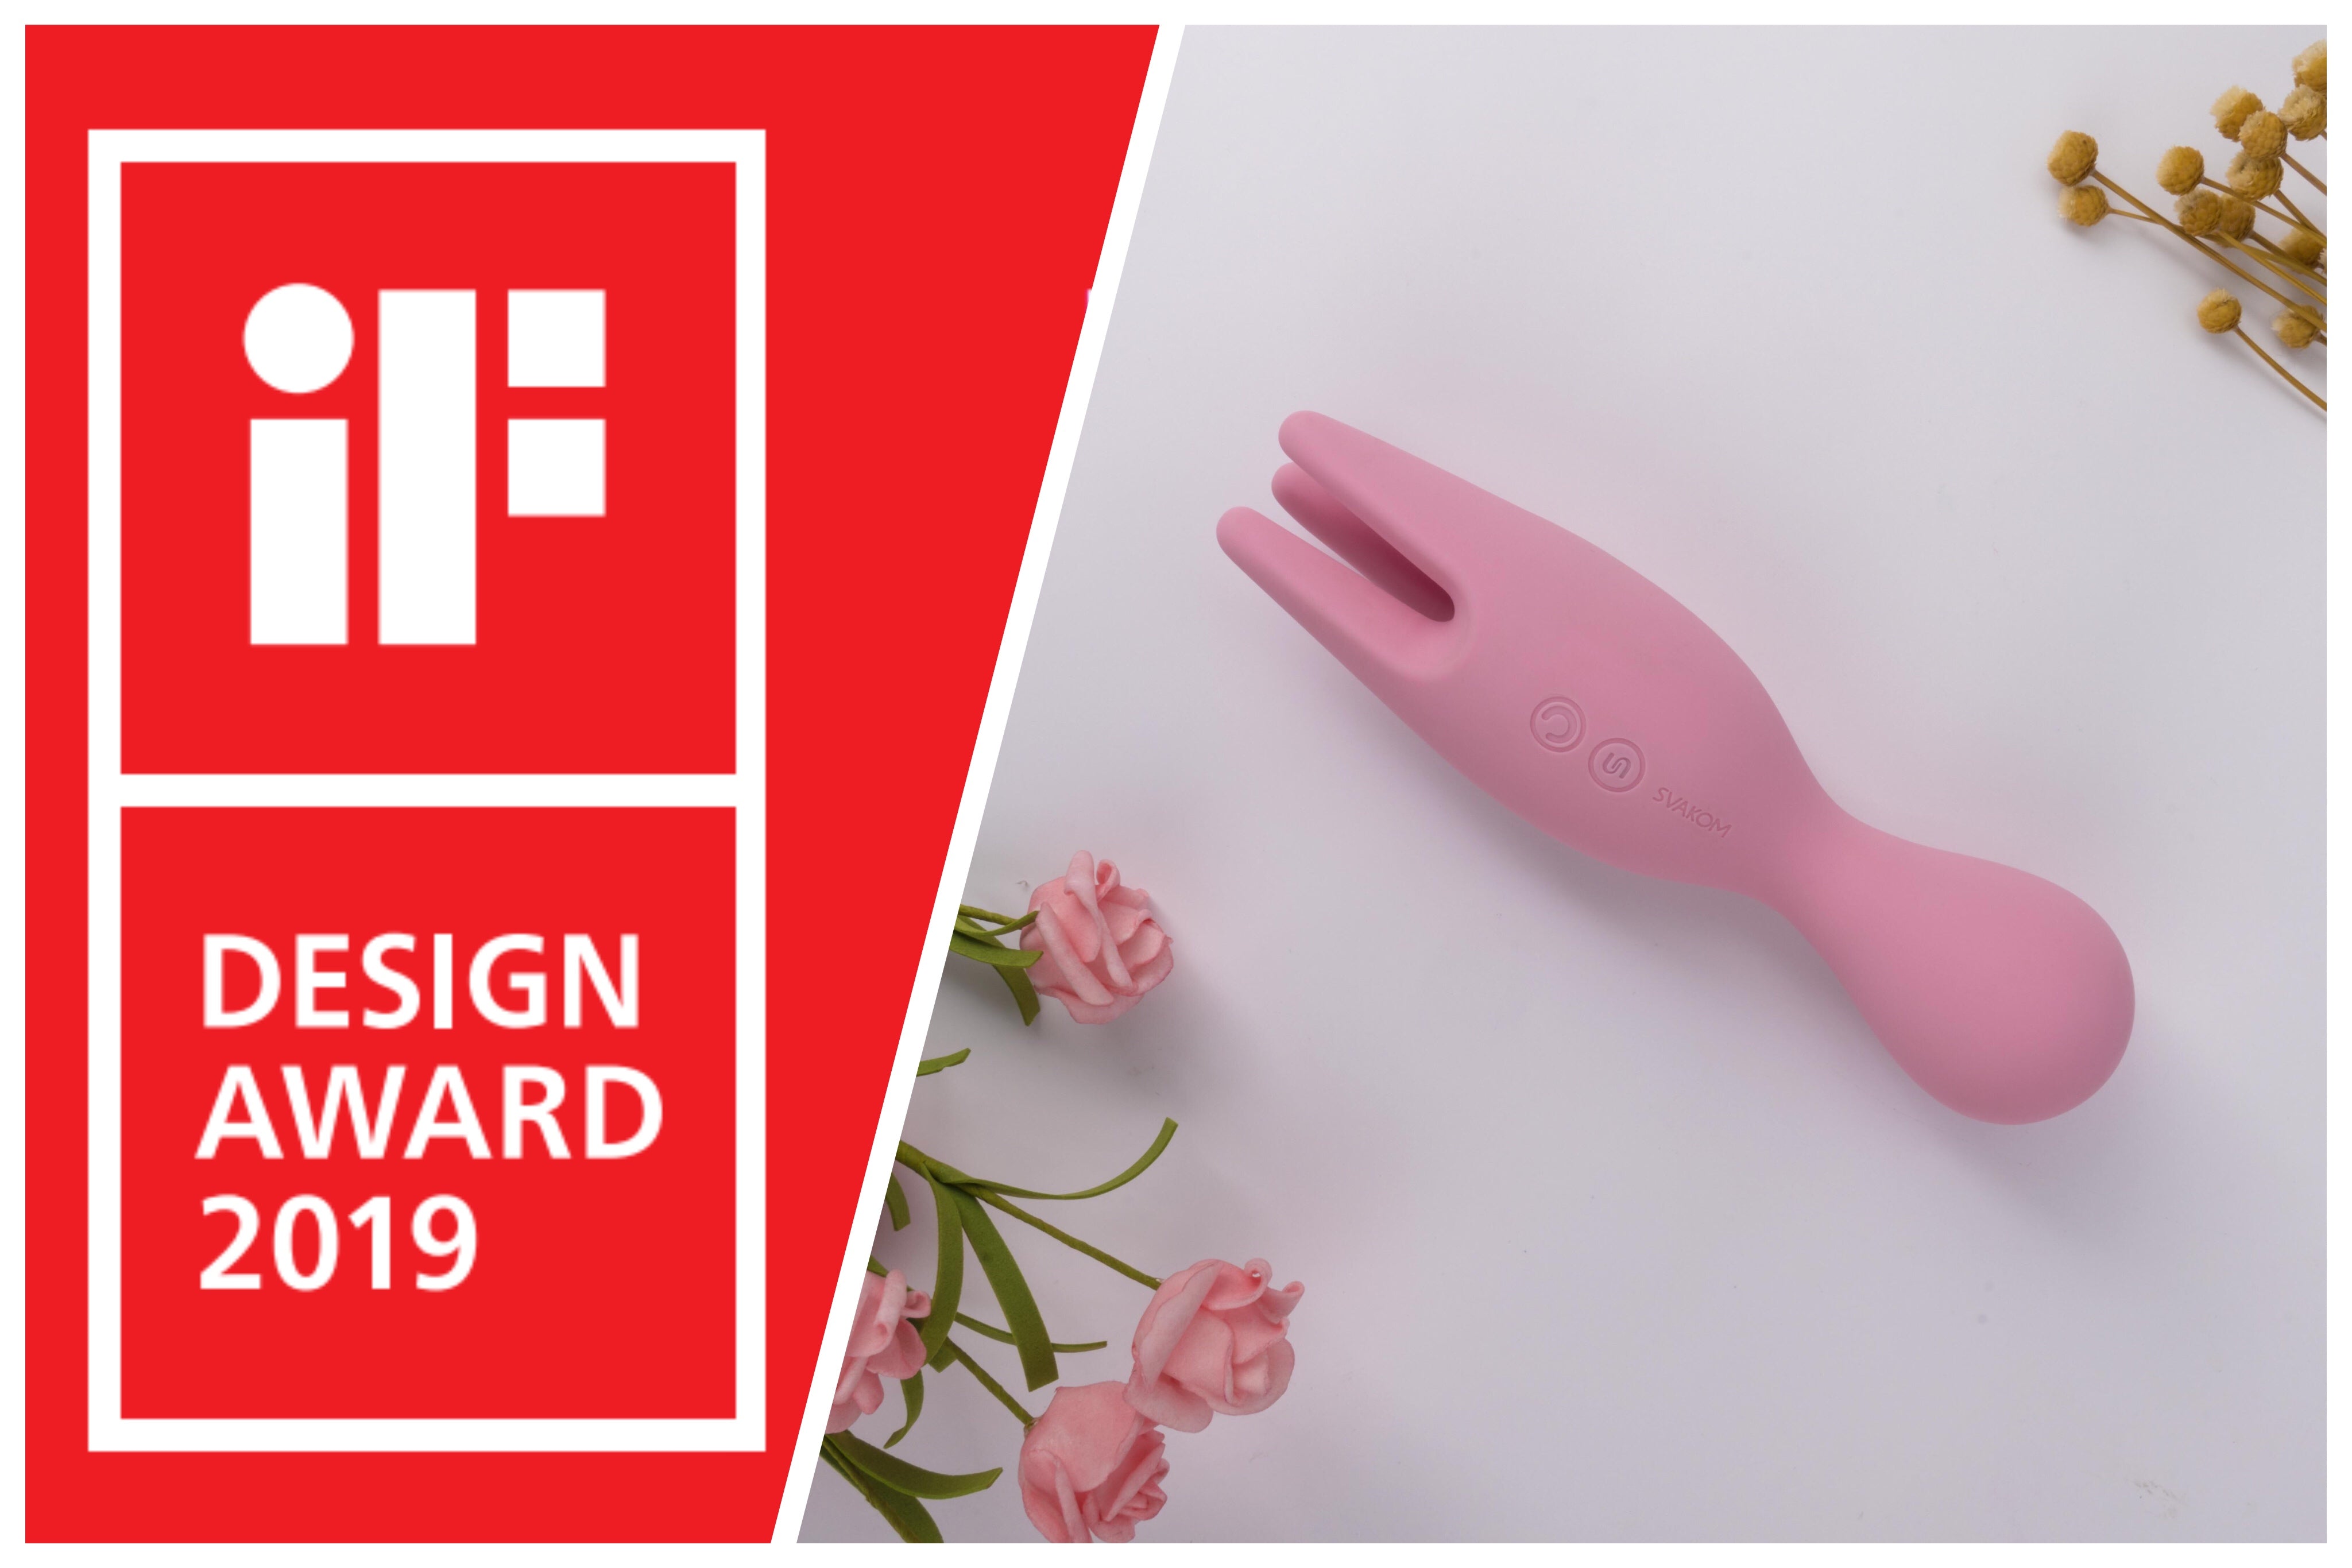 Nymph won iF design award 2019